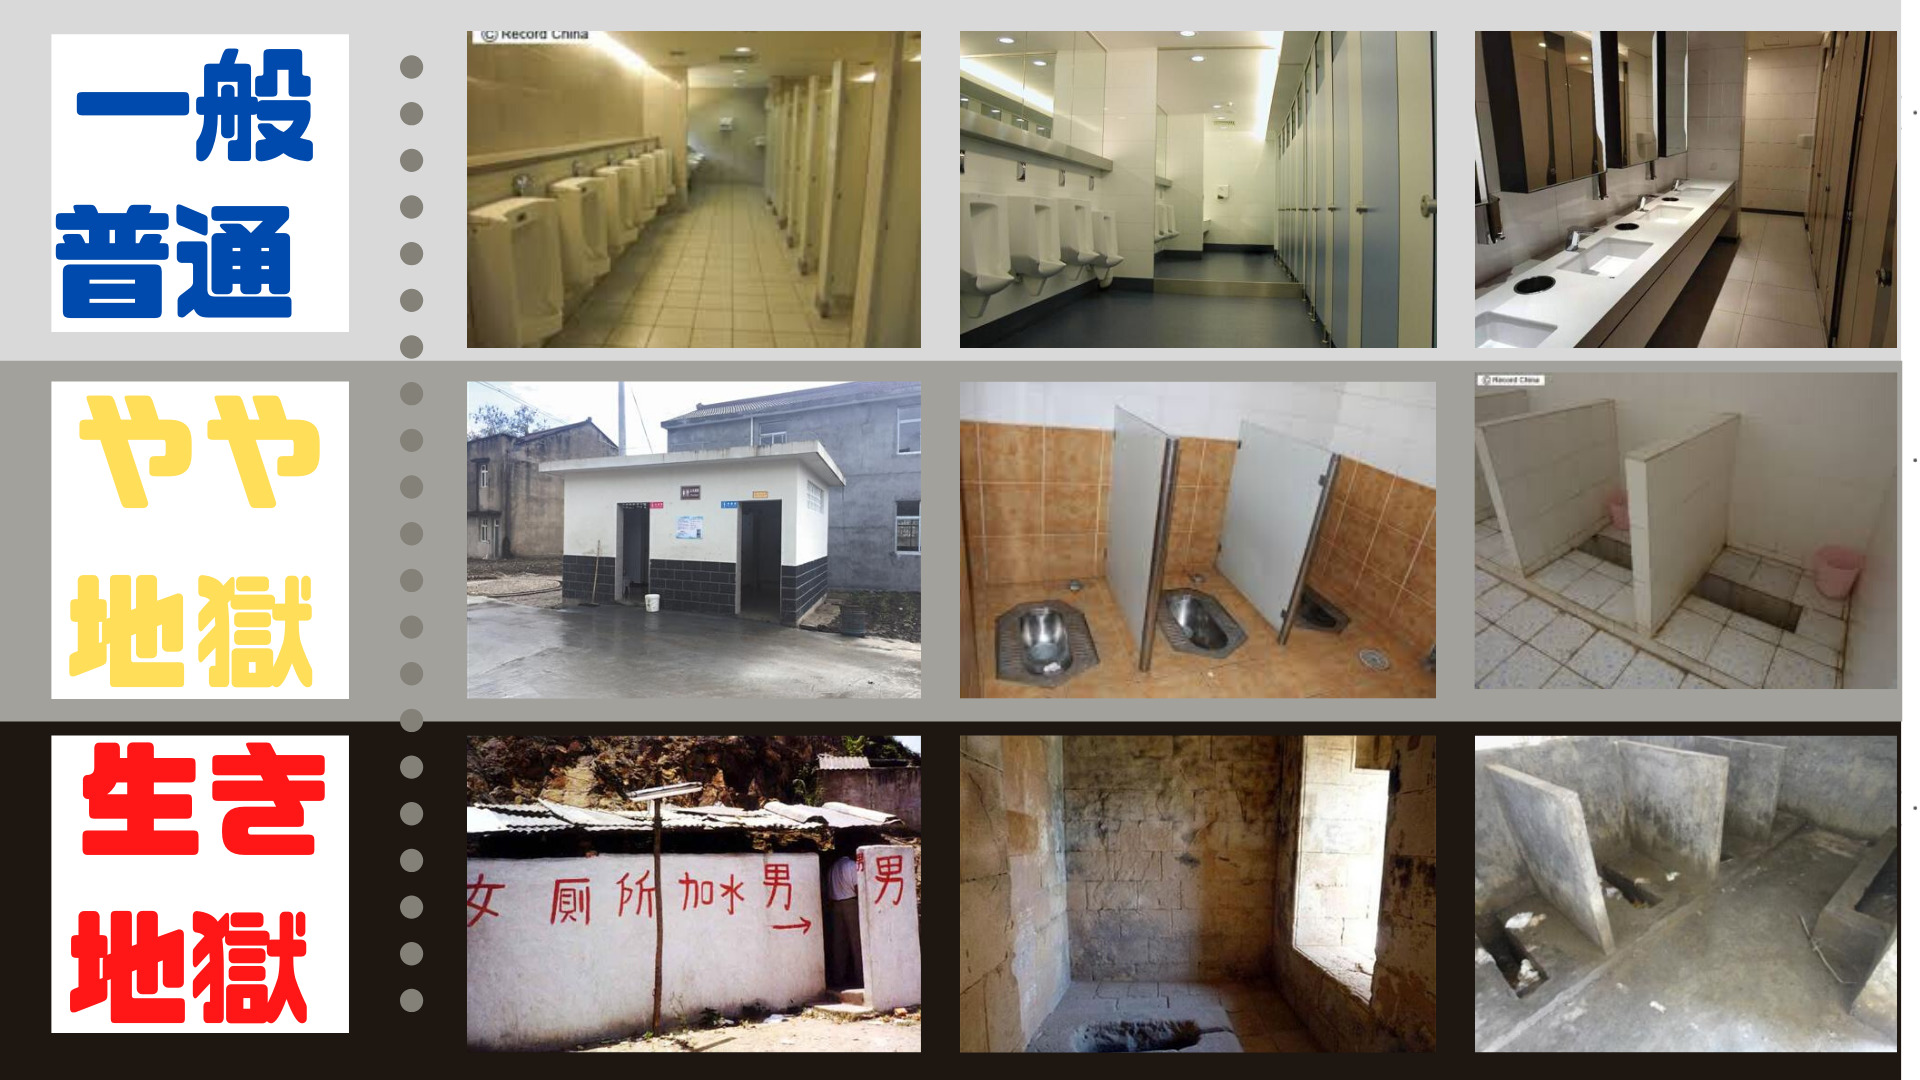 中国トイレの９枚の写真。レベルを階層に分けて表現している。